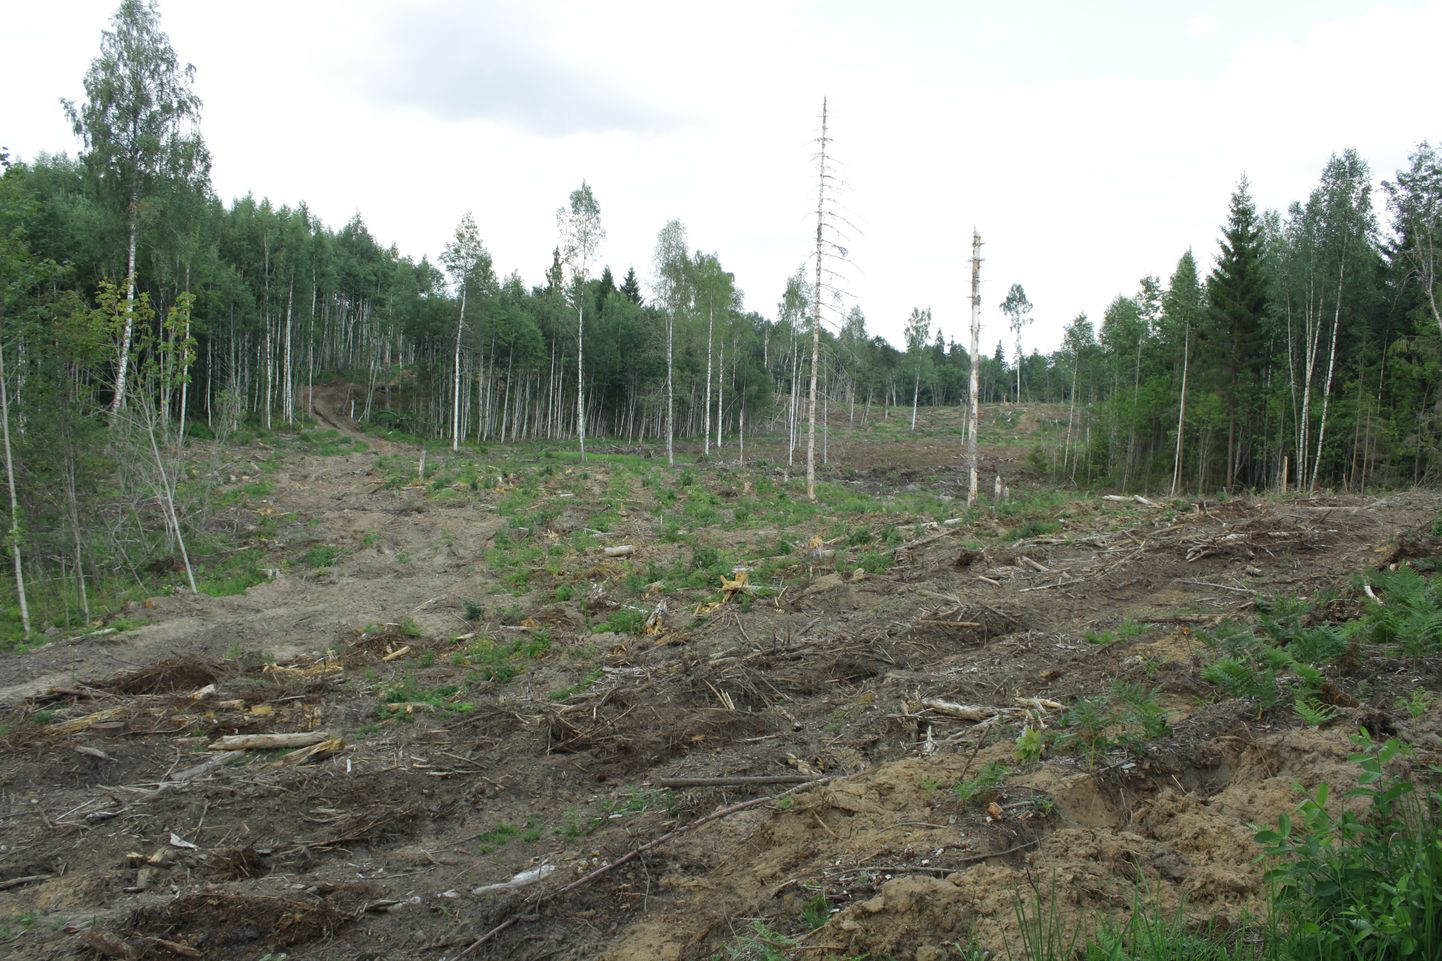 Keskkonnainspektsioon kontrollis eelmisel nädalal metsaraiet Tõrva vallas Kure kinnistul. Midagi taunimisväärset ei leitud.